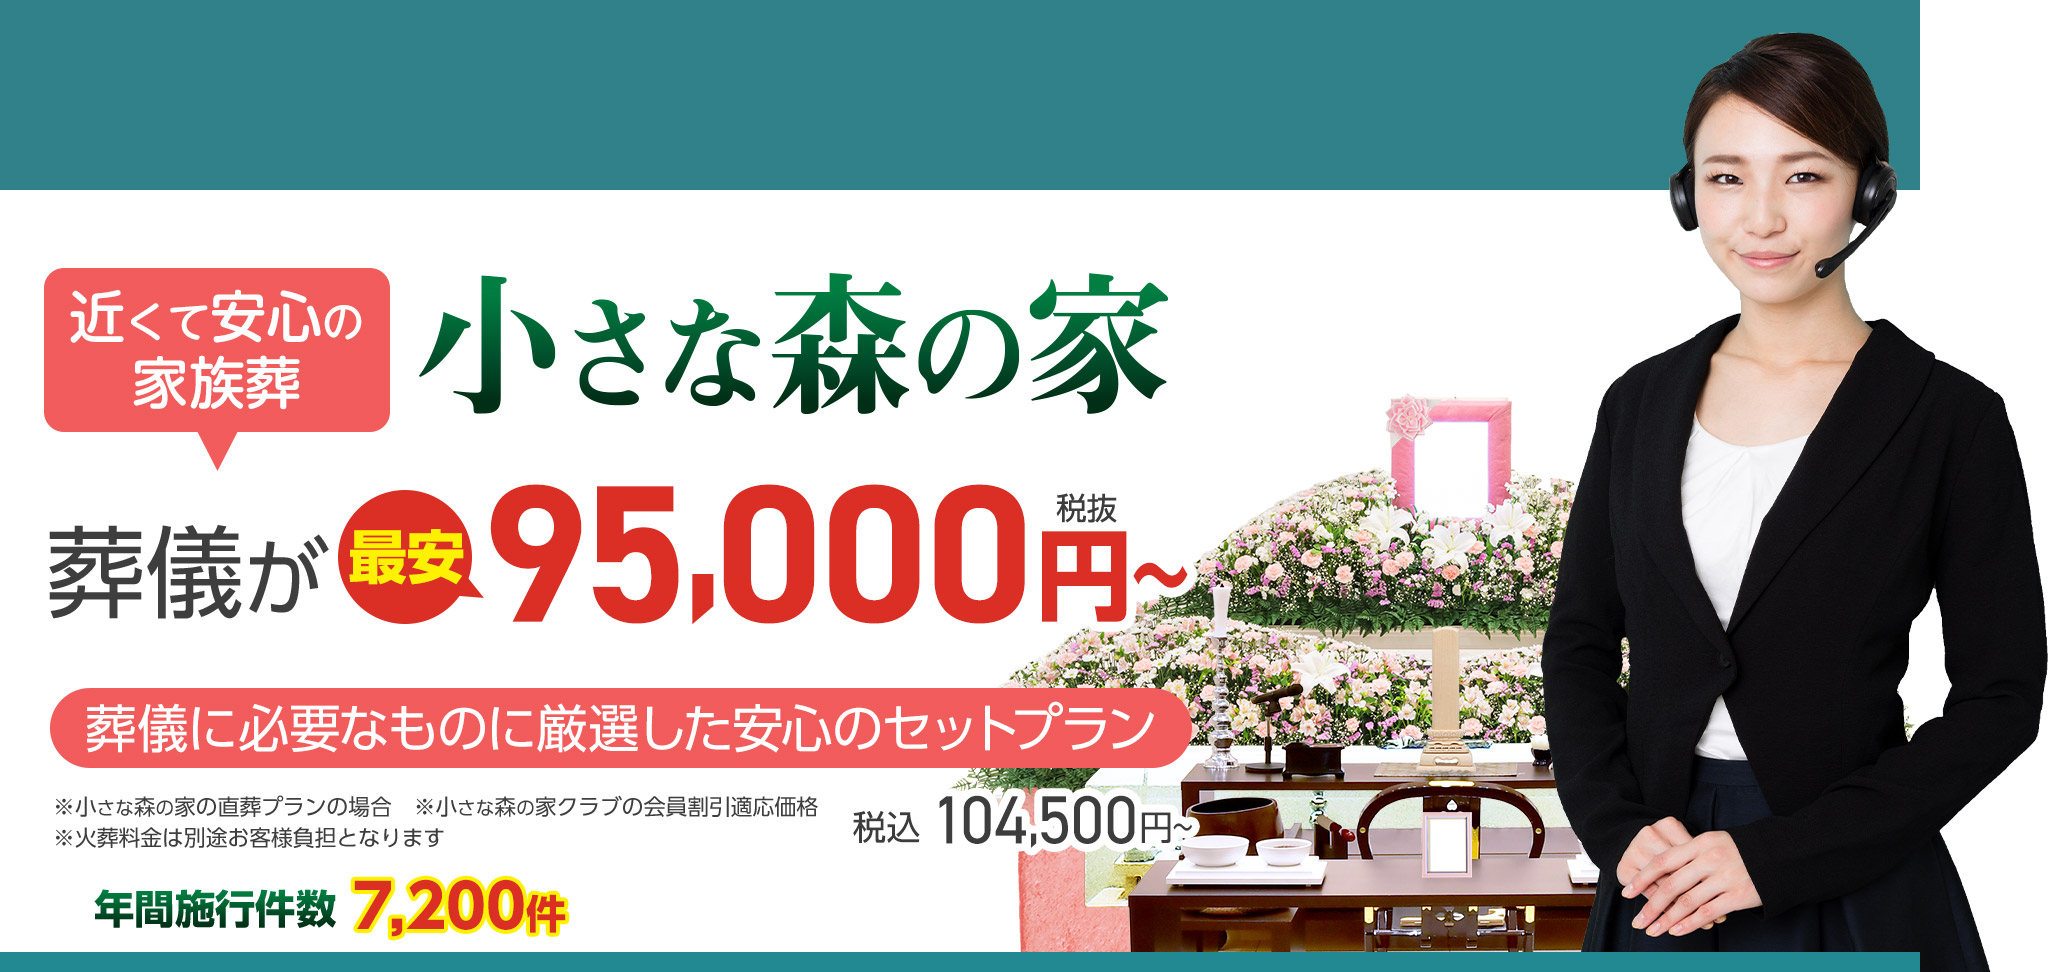 鎌ケ谷市で家族葬をお探しなら小さな森の家 近くて安心の葬儀・家族葬がWEB限定税抜95,000円